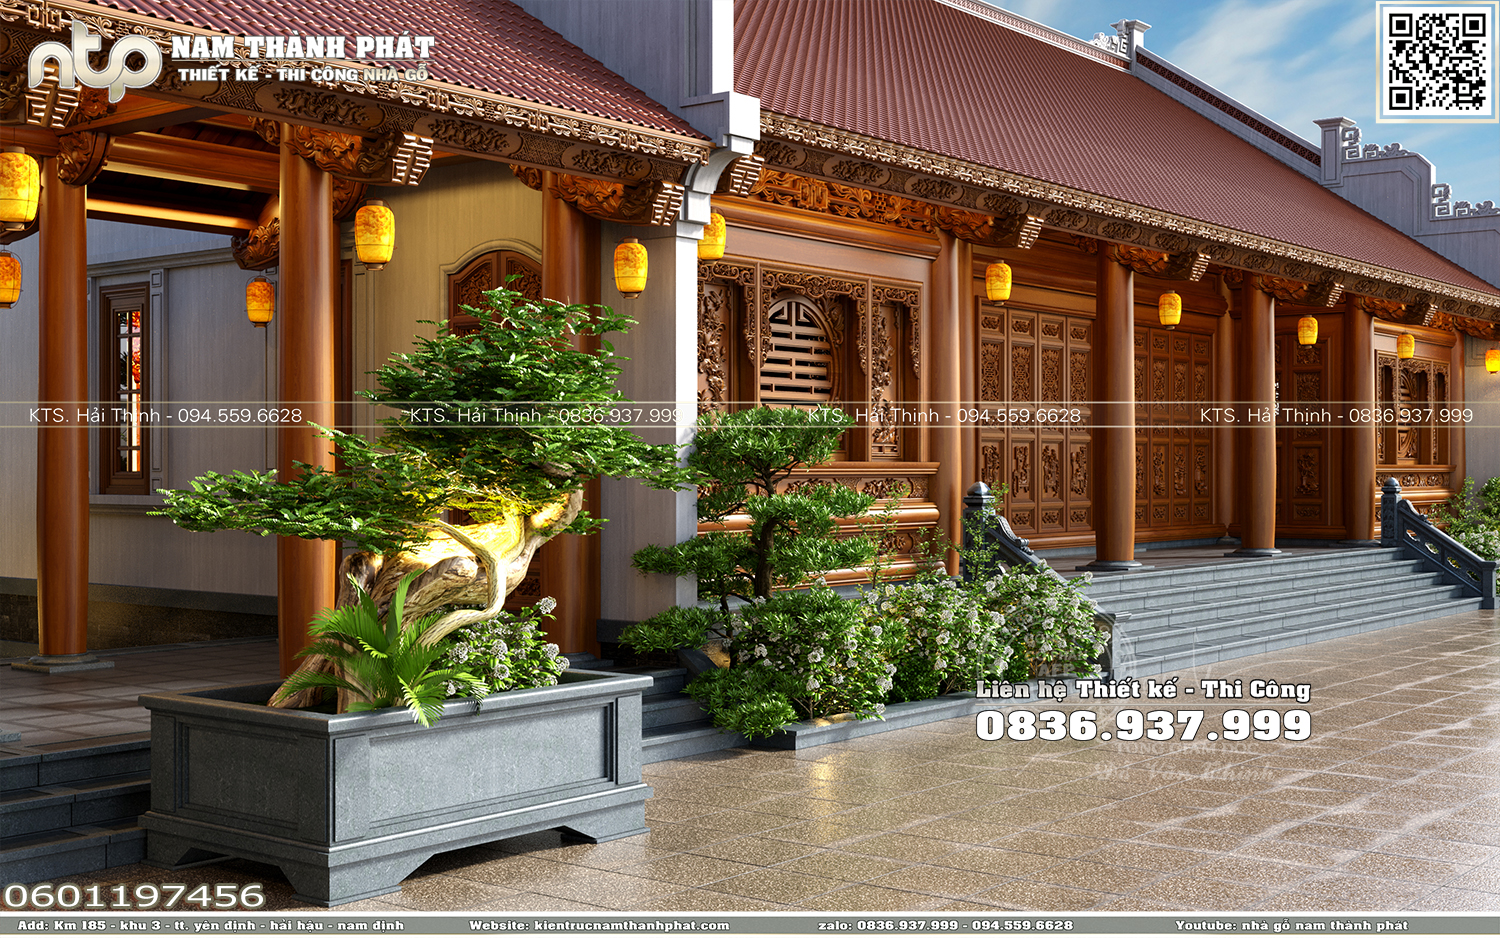 Nhà gỗ 5 gian 2 buồng lồi 22 cột đẹp - Mẫu nhà gỗ kết hợp nhà xây đẹp tại Nghệ An